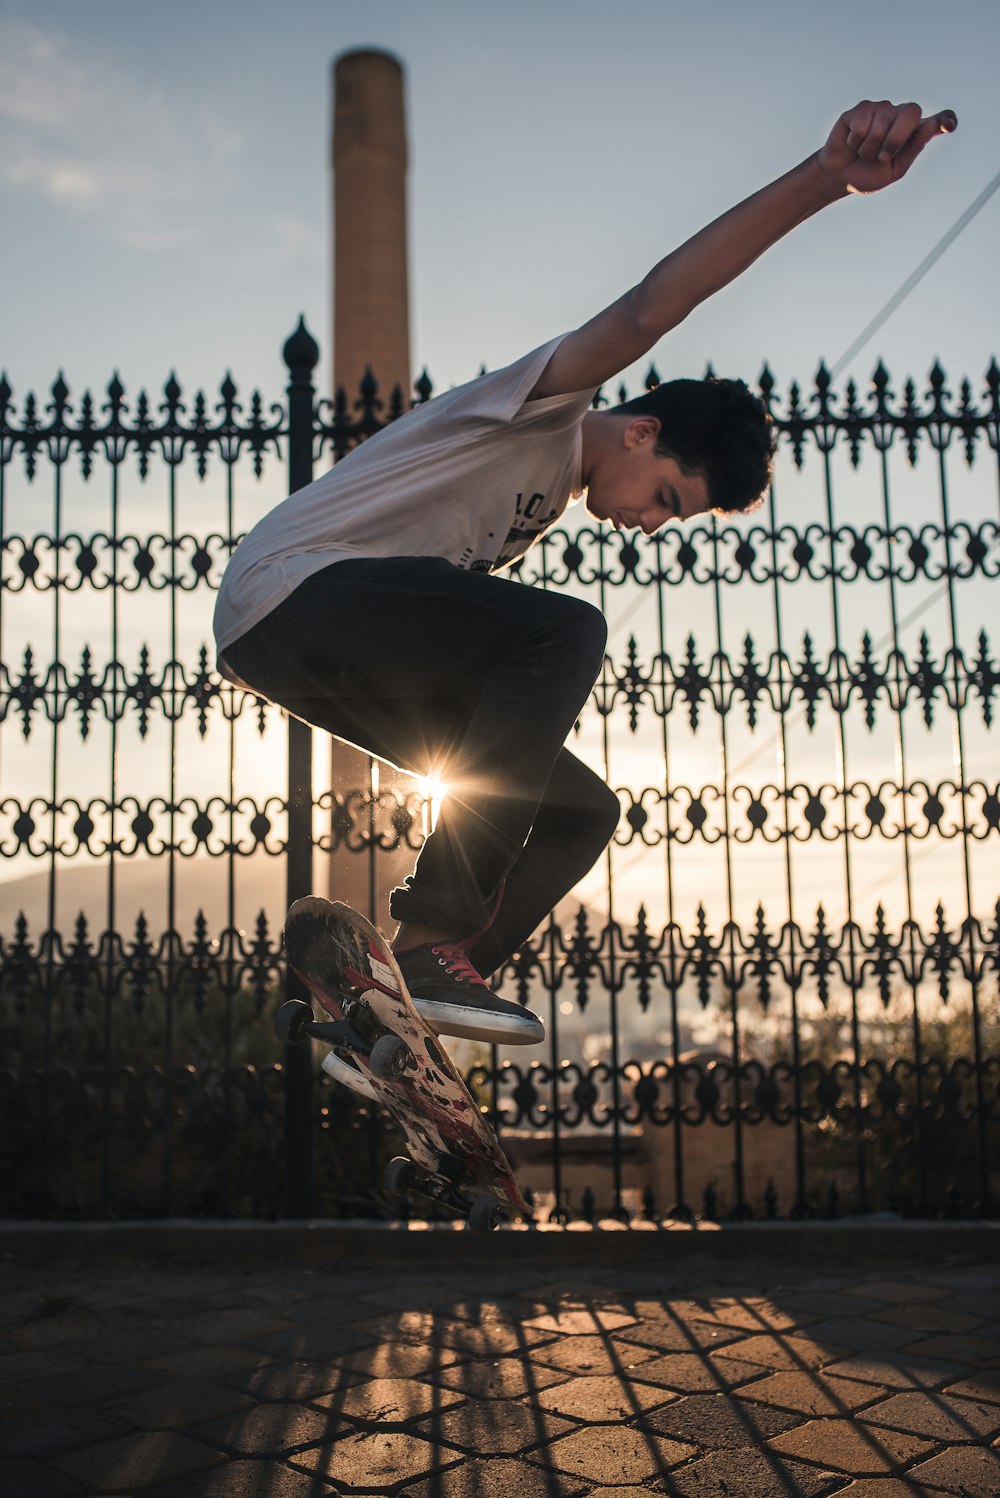 Mann macht tagsüber einen Skateboard-Trick in der Nähe eines schwarzen Stahlzauns